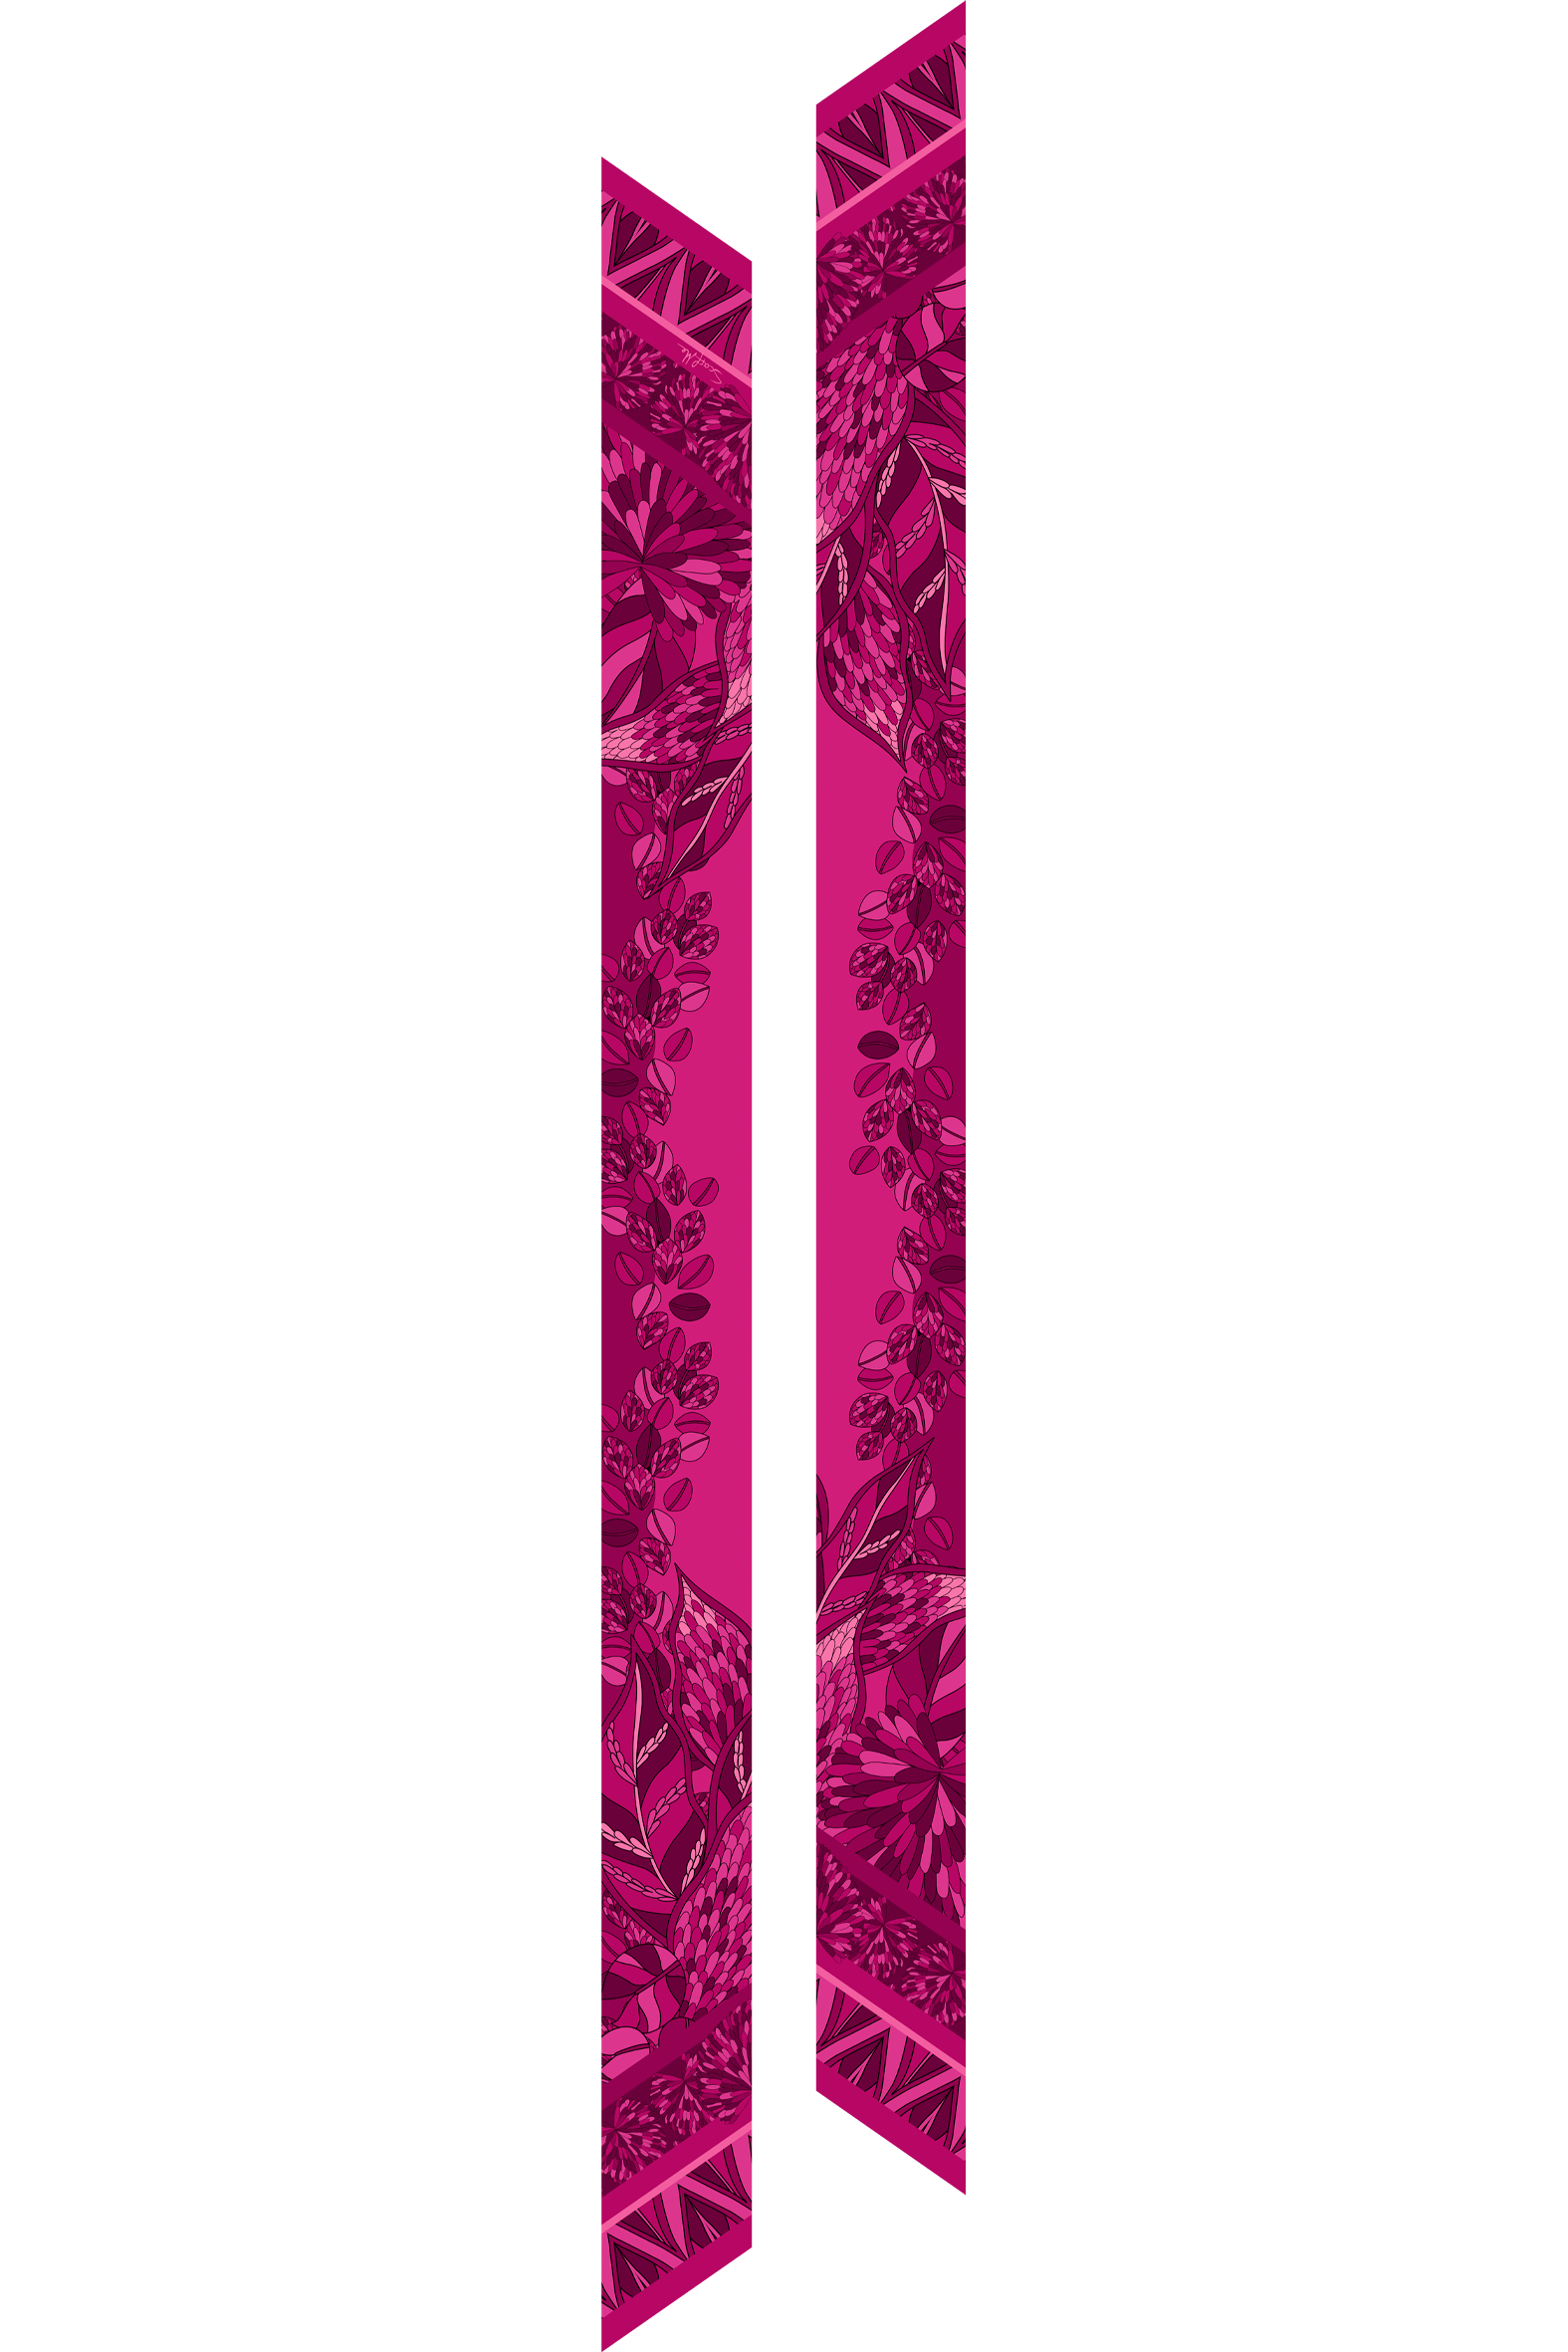 Twilly Ramos de Púrpura pink em cetim de seda | 8x130cm